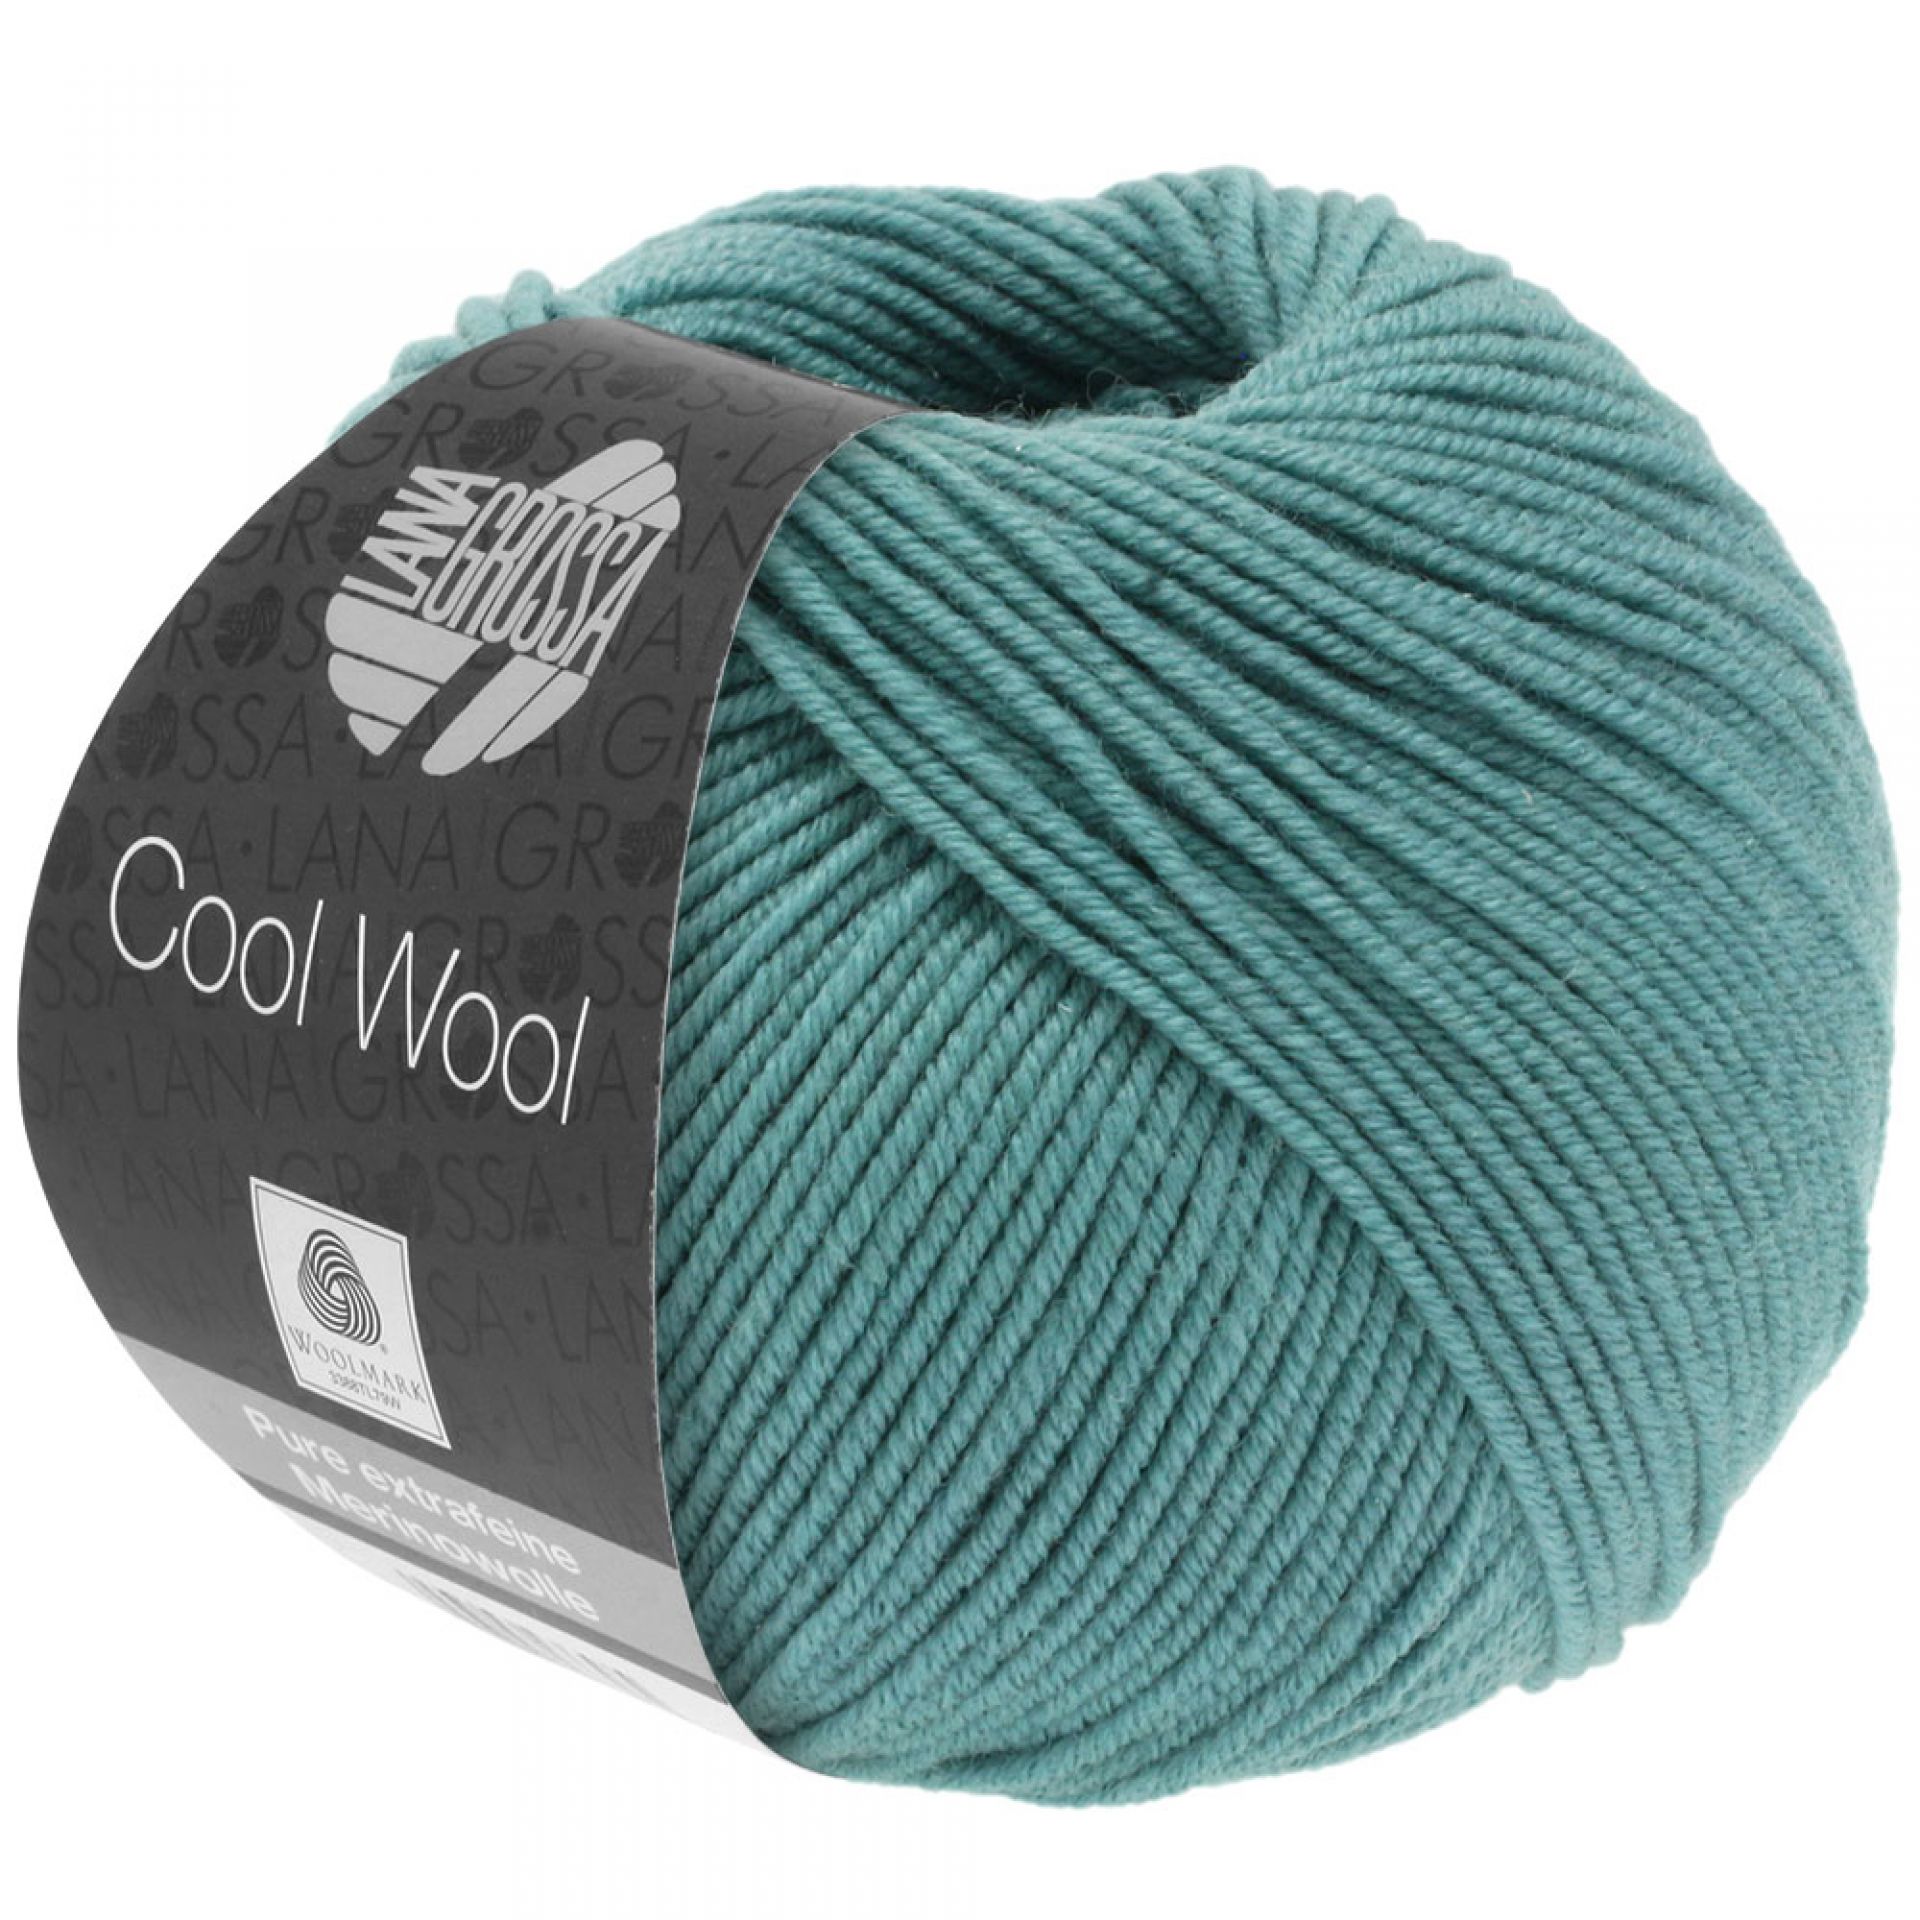 Lana Grossa Cool Wool kleur 2072